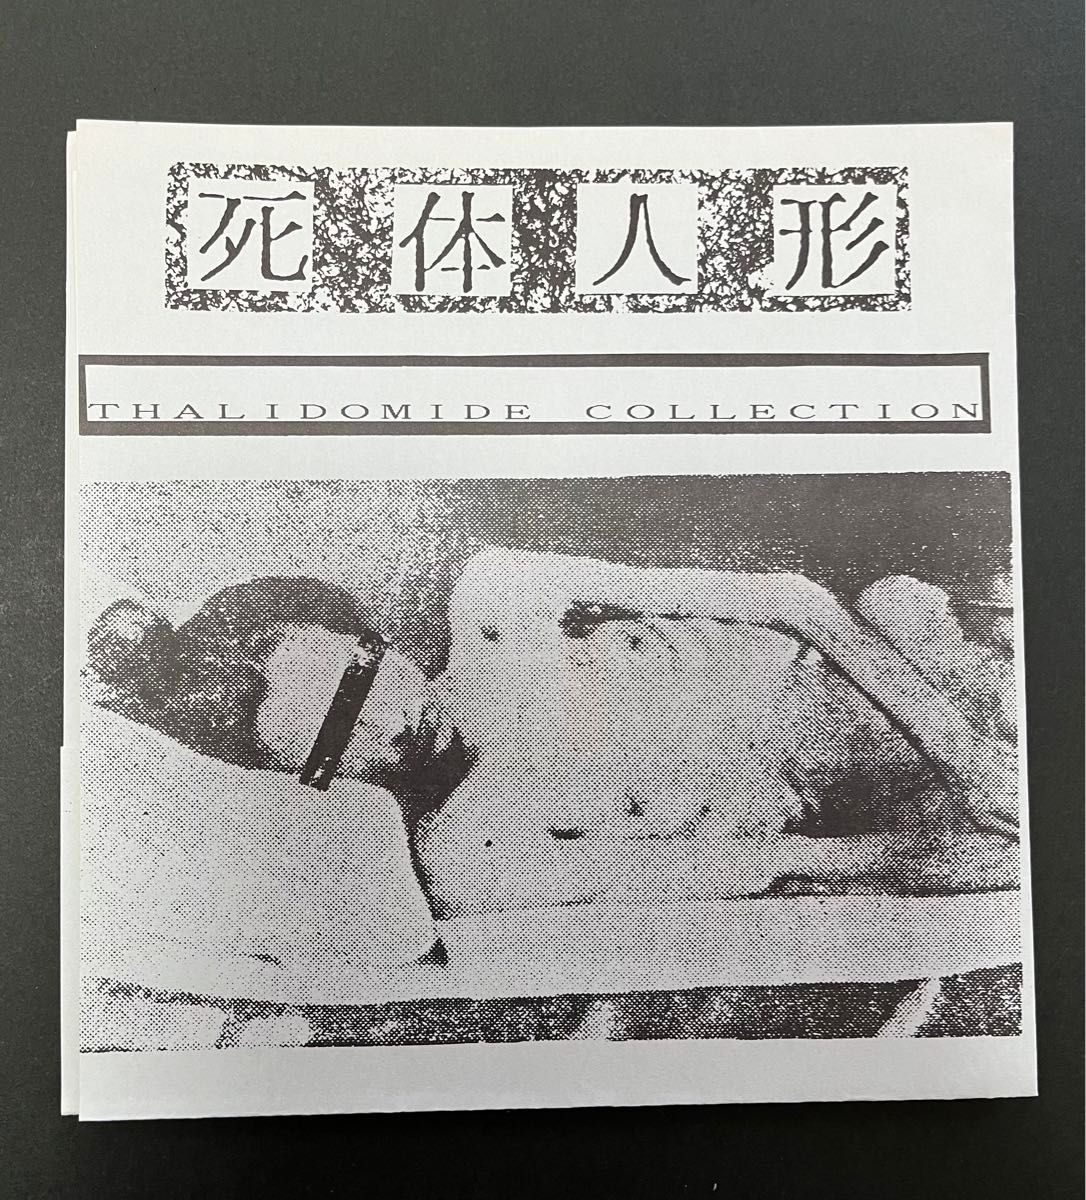 【ノイズ】死体人形『サリドマイド・コレクション2ND』ソノシート flexi ゲロゲリゲゲゲ 恐悪狂人団 胎児